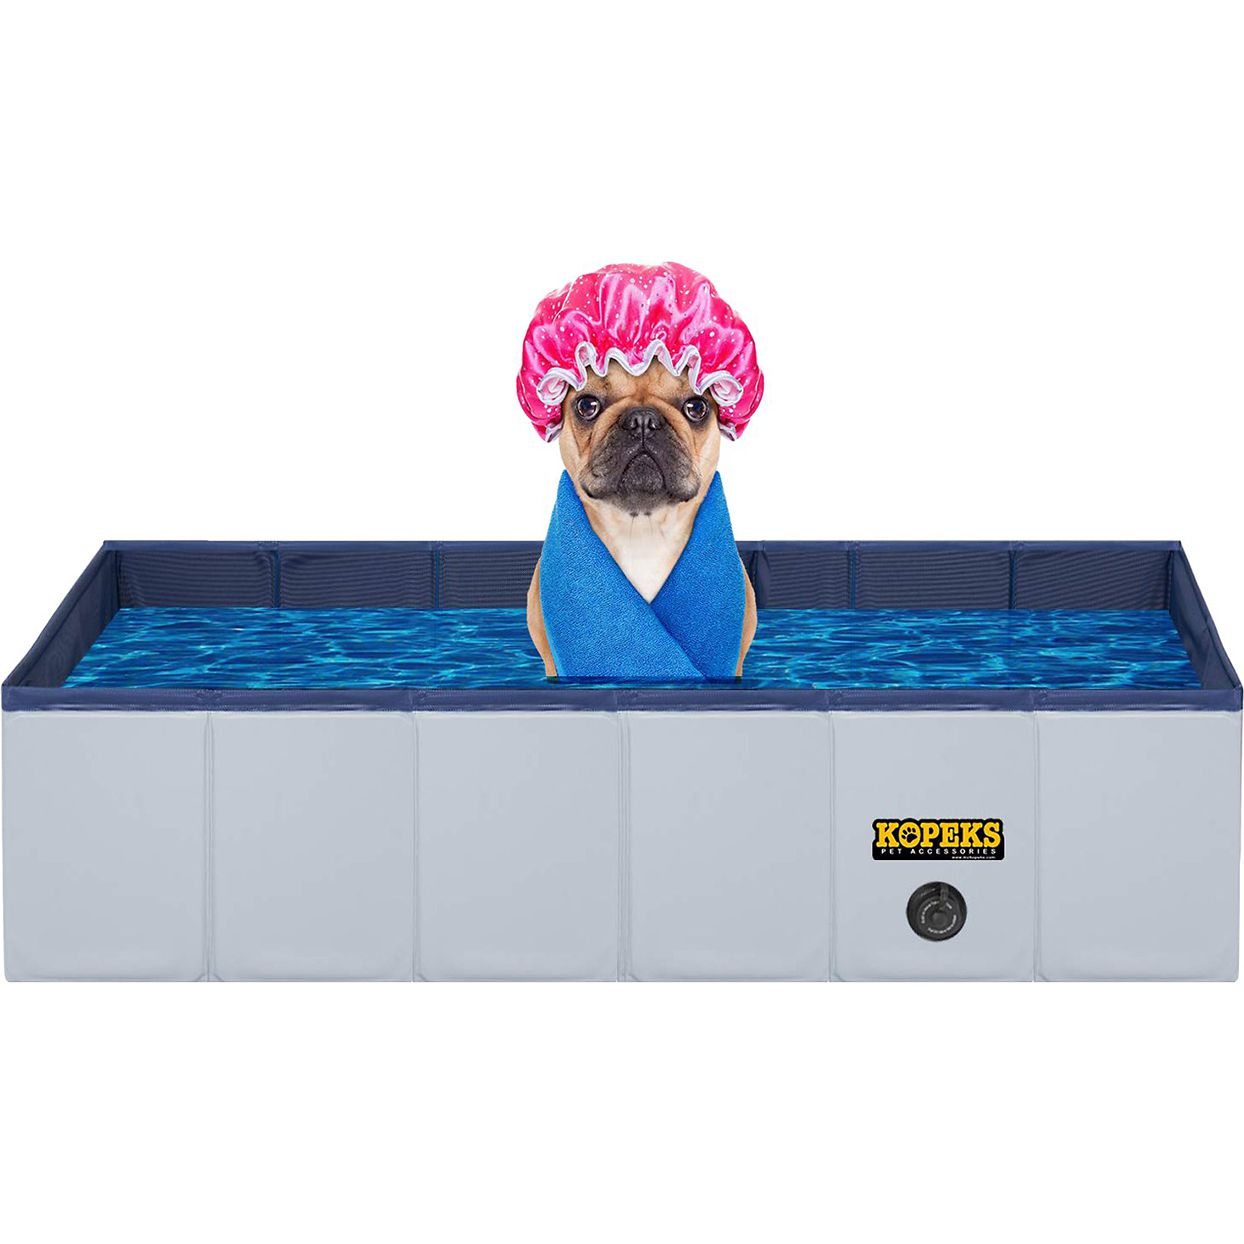 Kopeks outdoor portable rectangular dog swimming pool